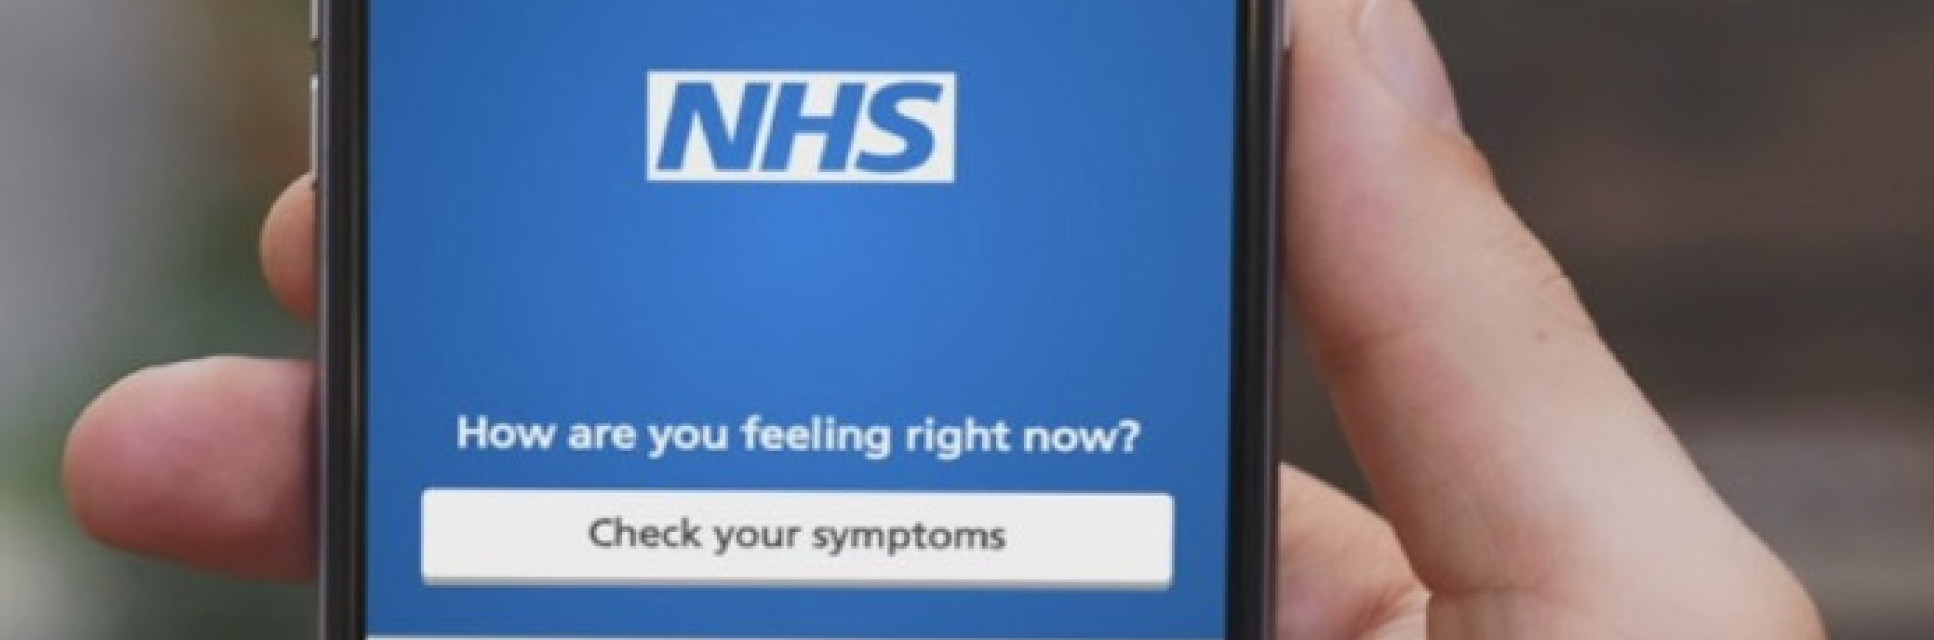 NHS app on a phone